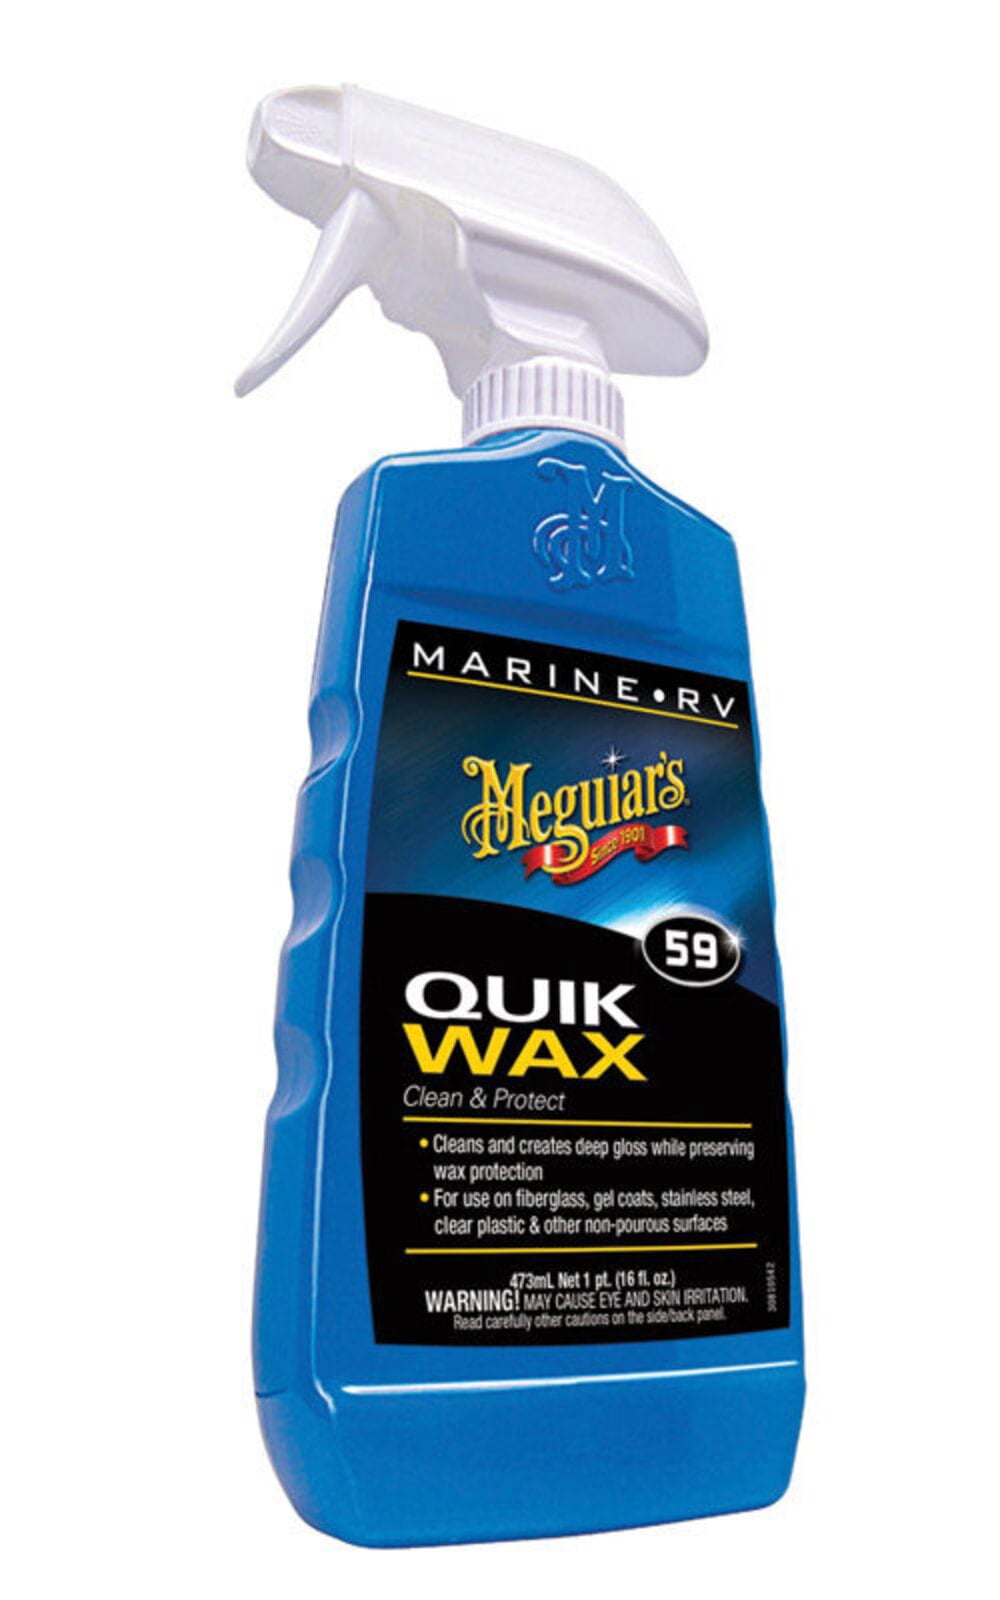 Meguiar's Quik Wax 59